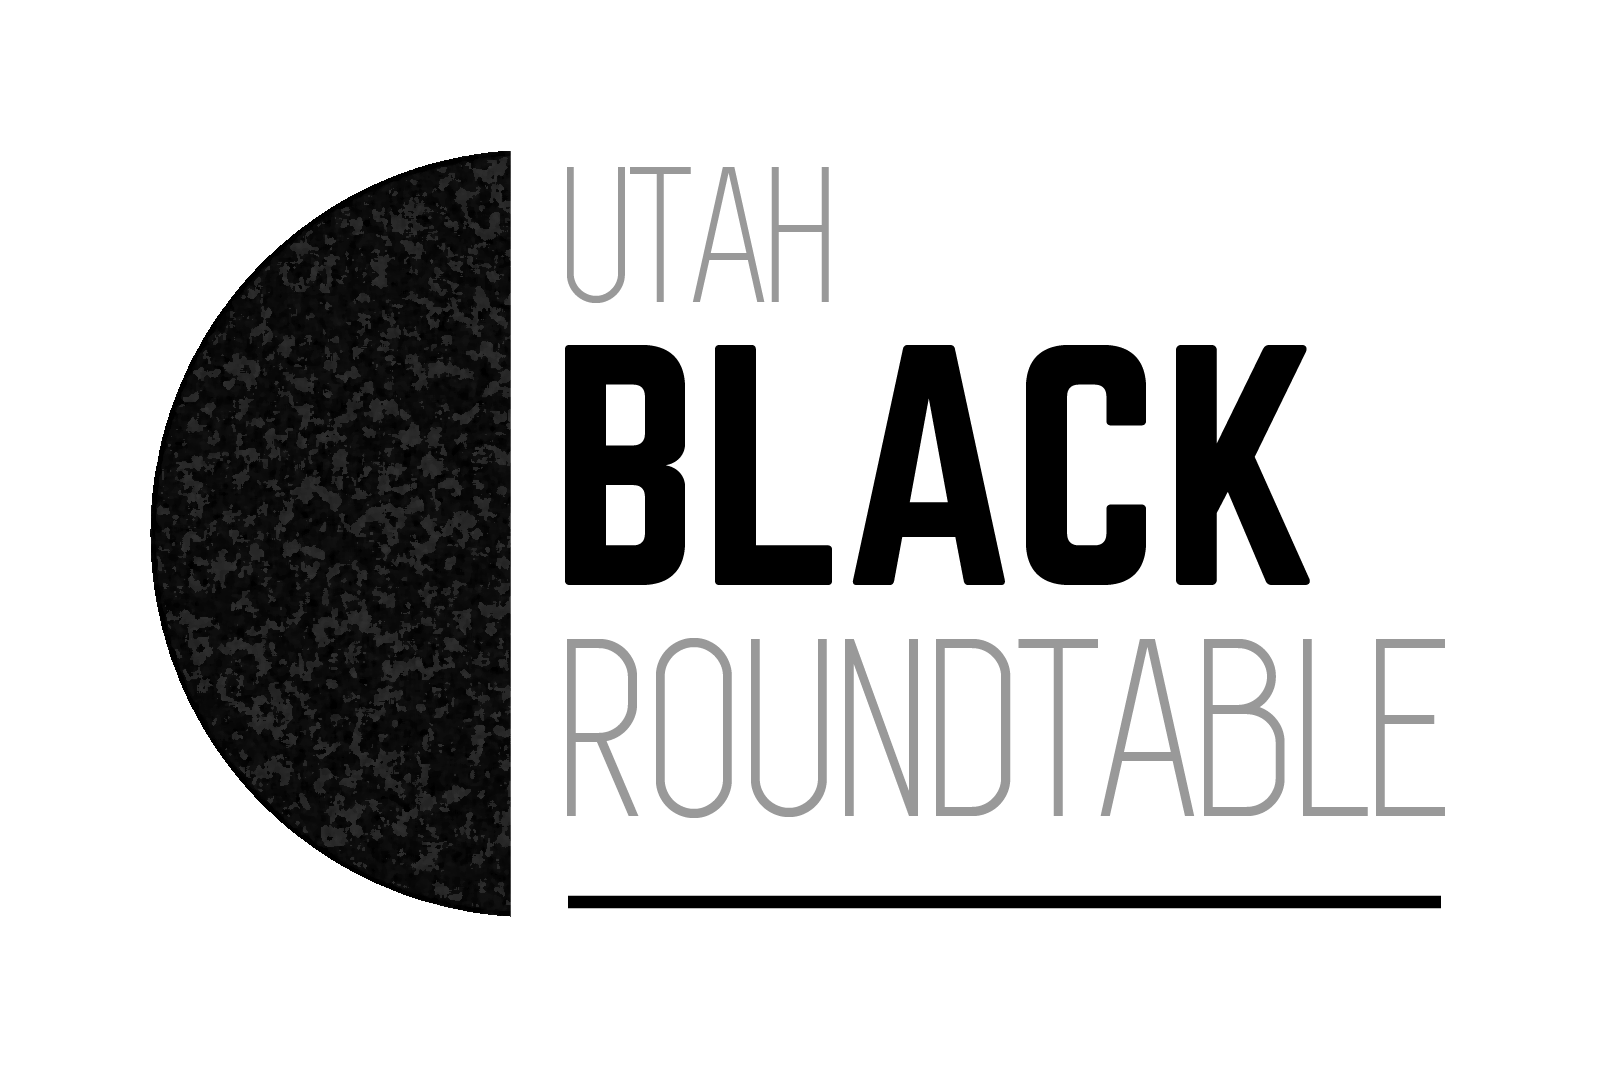 Utah Black Roundtable